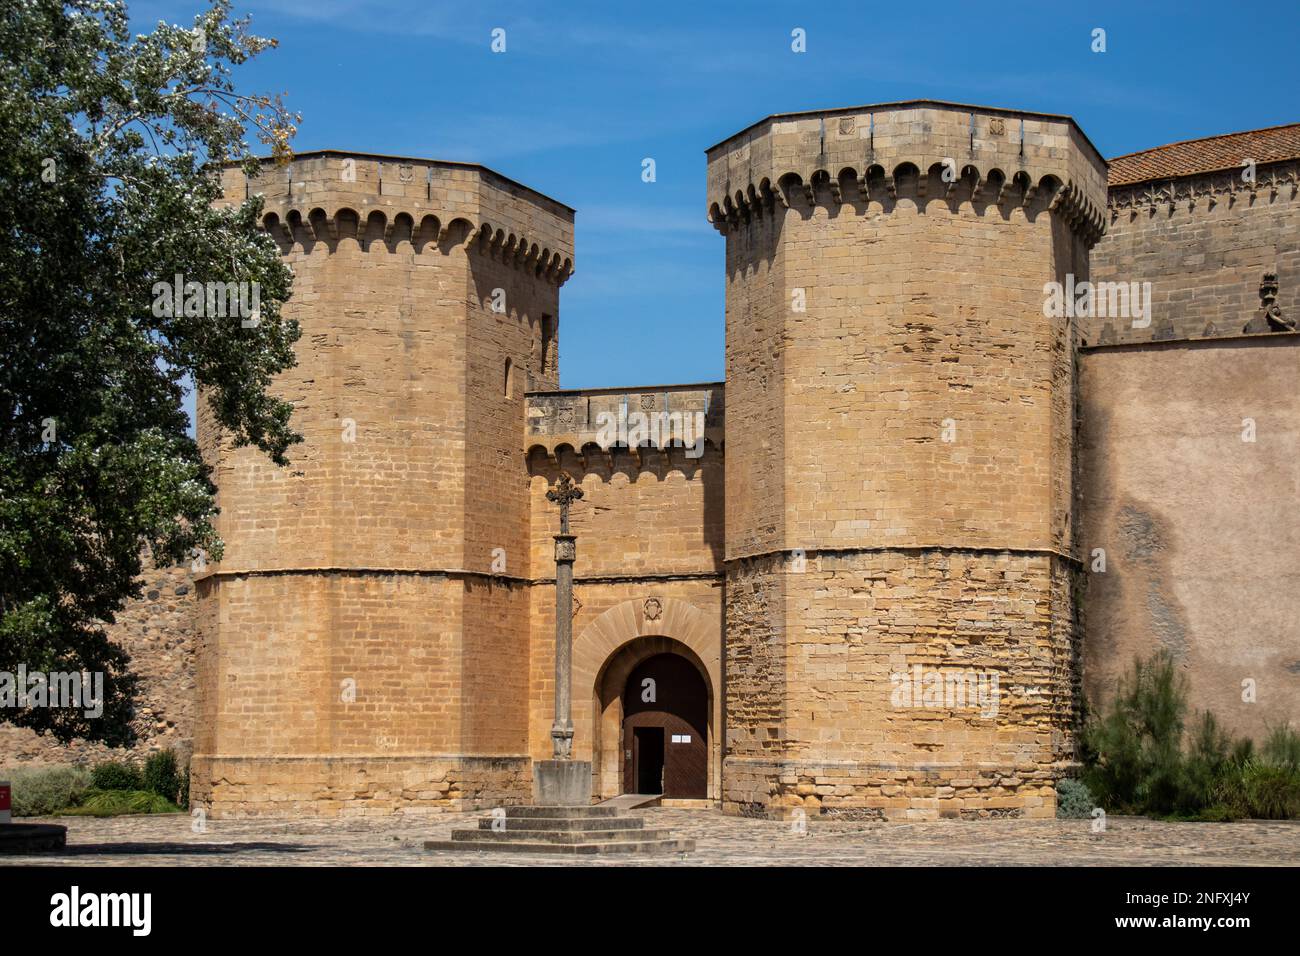 Puerta de entrada real al Monasterio de Poblet, Tarragona, España Stock Photo